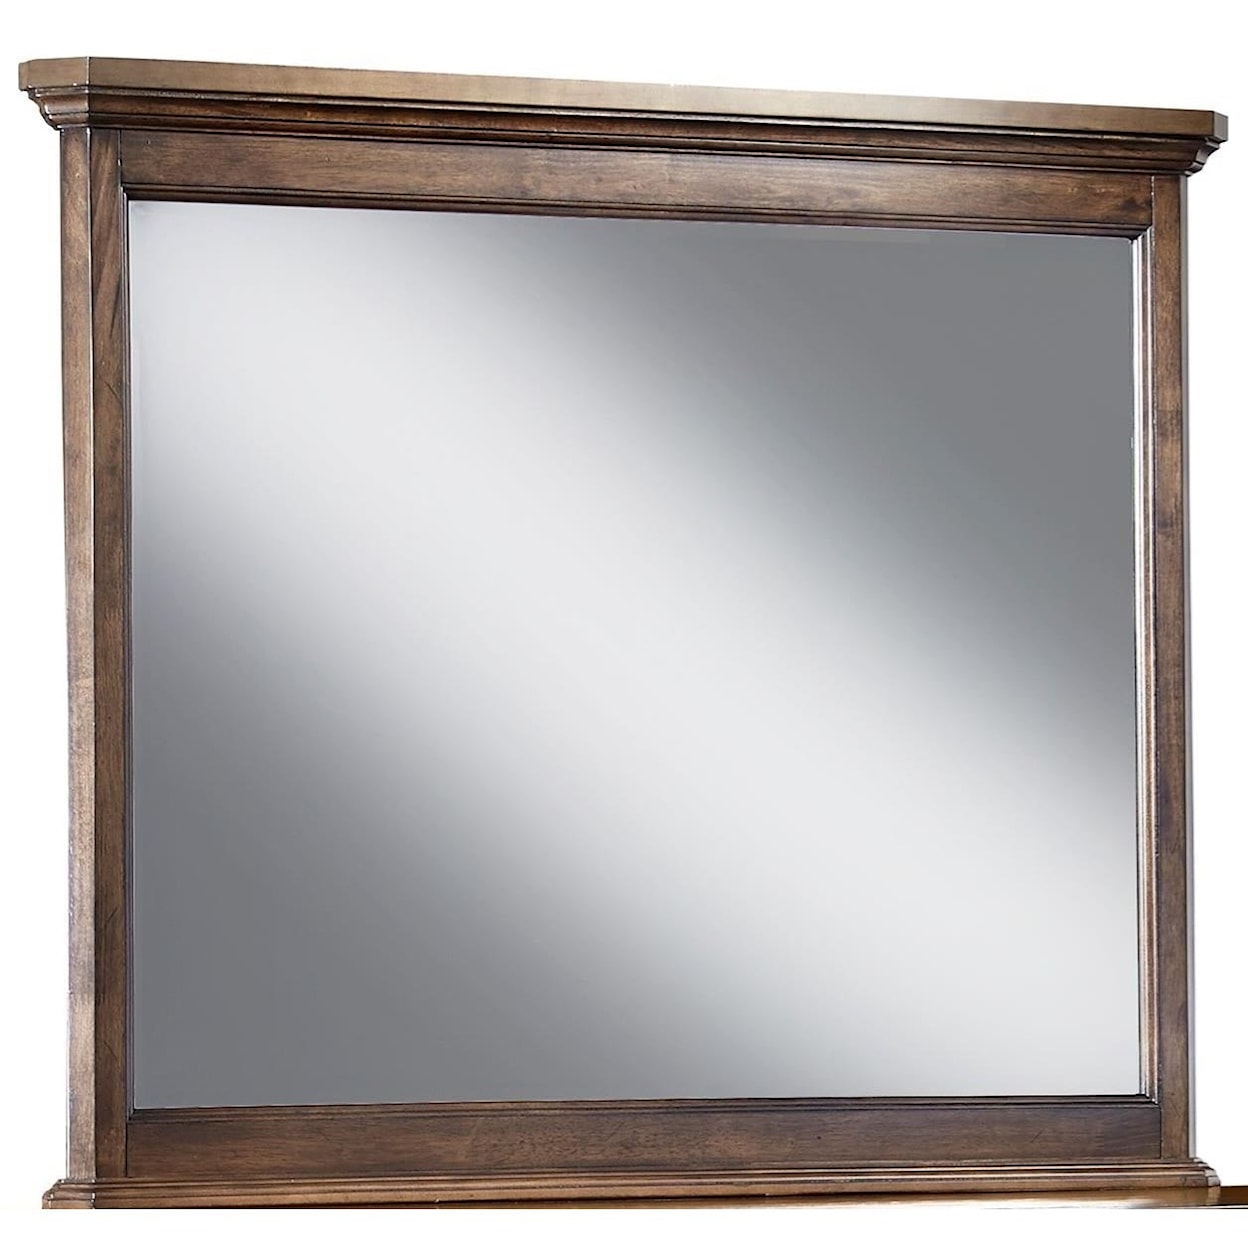 Intercon Telluride Dresser Mirror